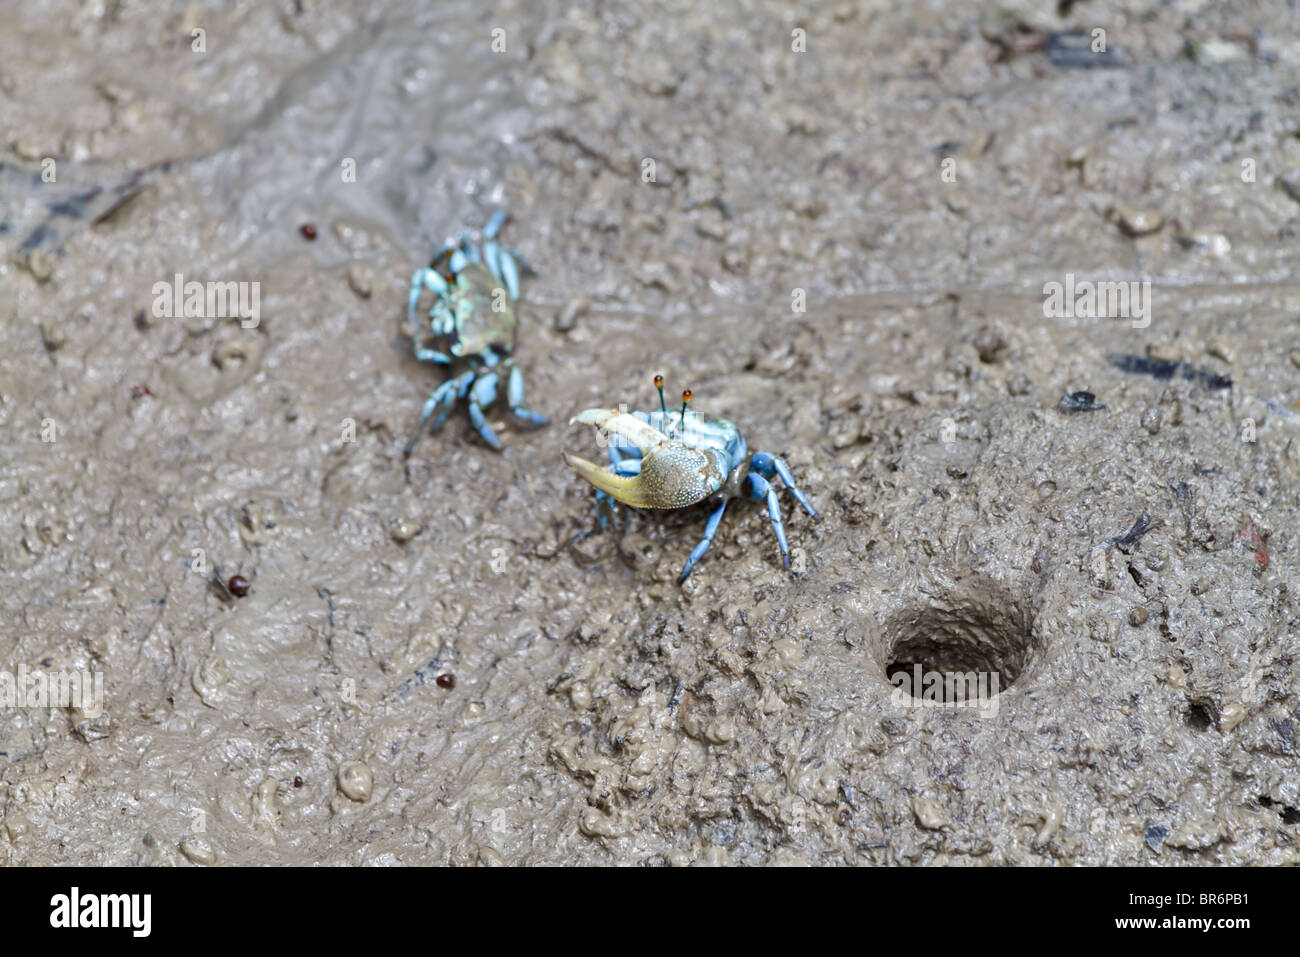 Crabe violoniste dans les mangroves, homme à côté de son approche d'un terrier femelle à proximité. Uca forcipata probablement. Banque D'Images